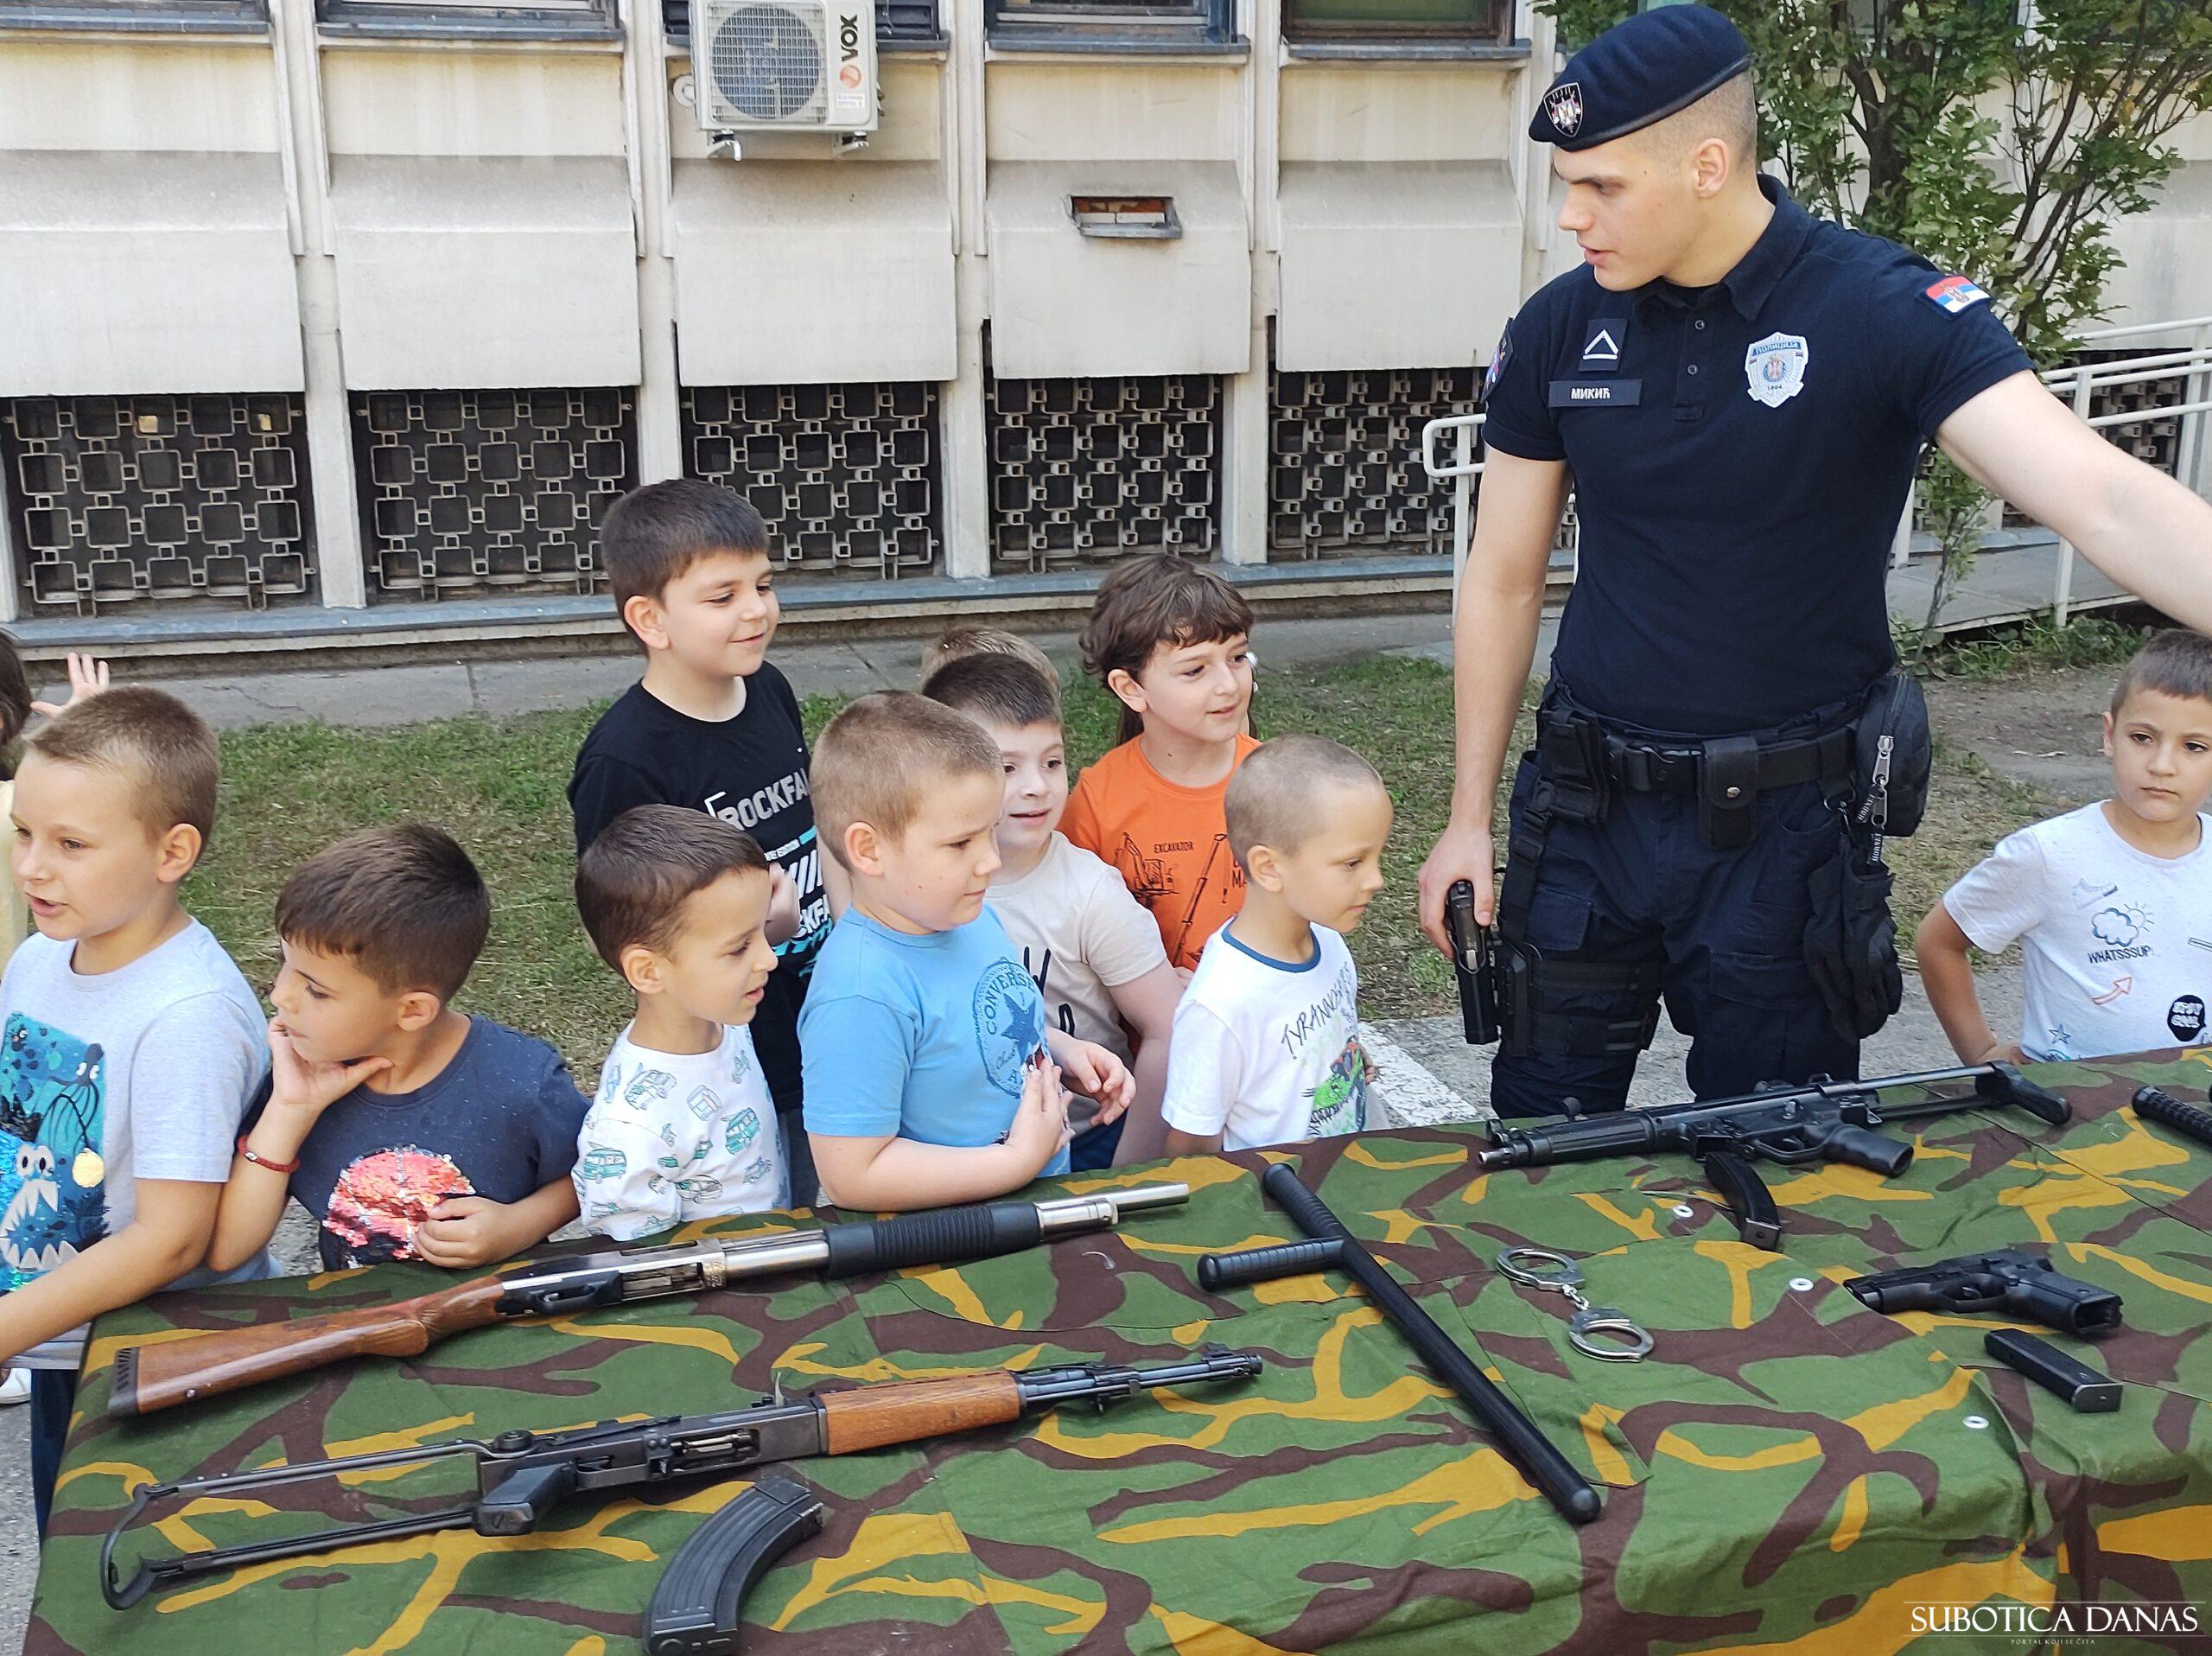 PU Subotica obeležila Dan policije i MUP prezentacijom opreme, naoružanja i vozila